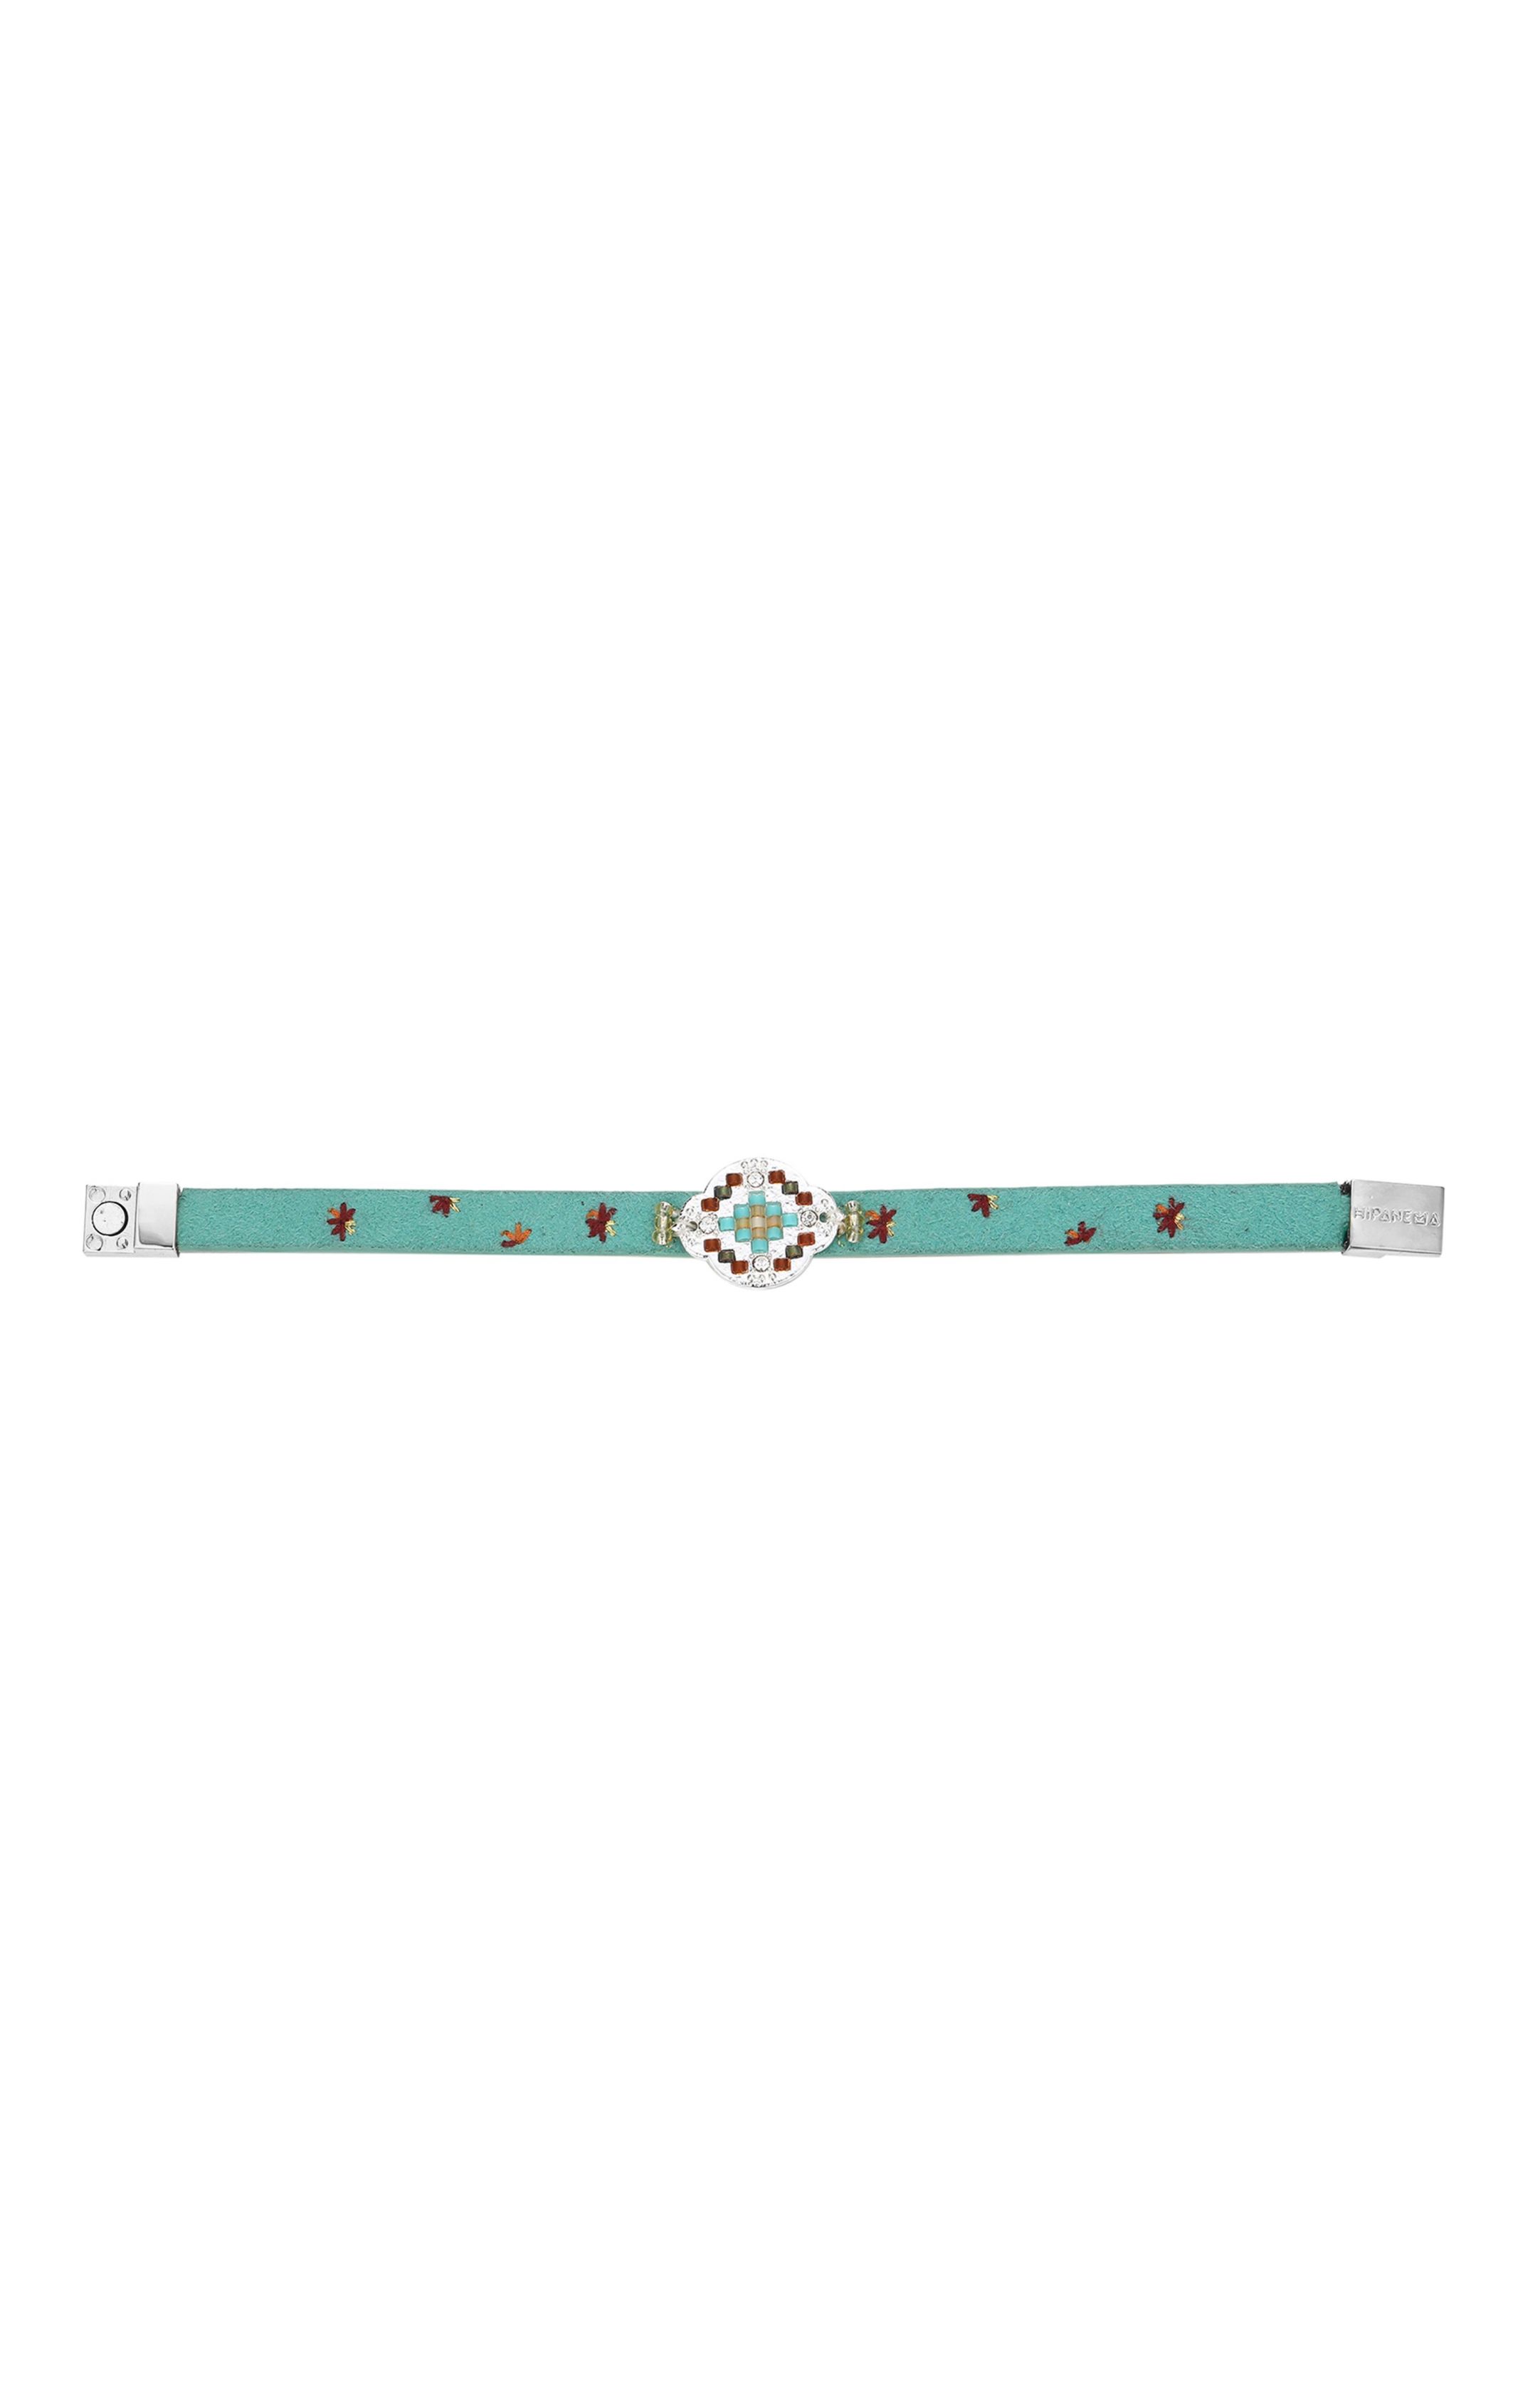 Bracelet Eclectik Turquoise